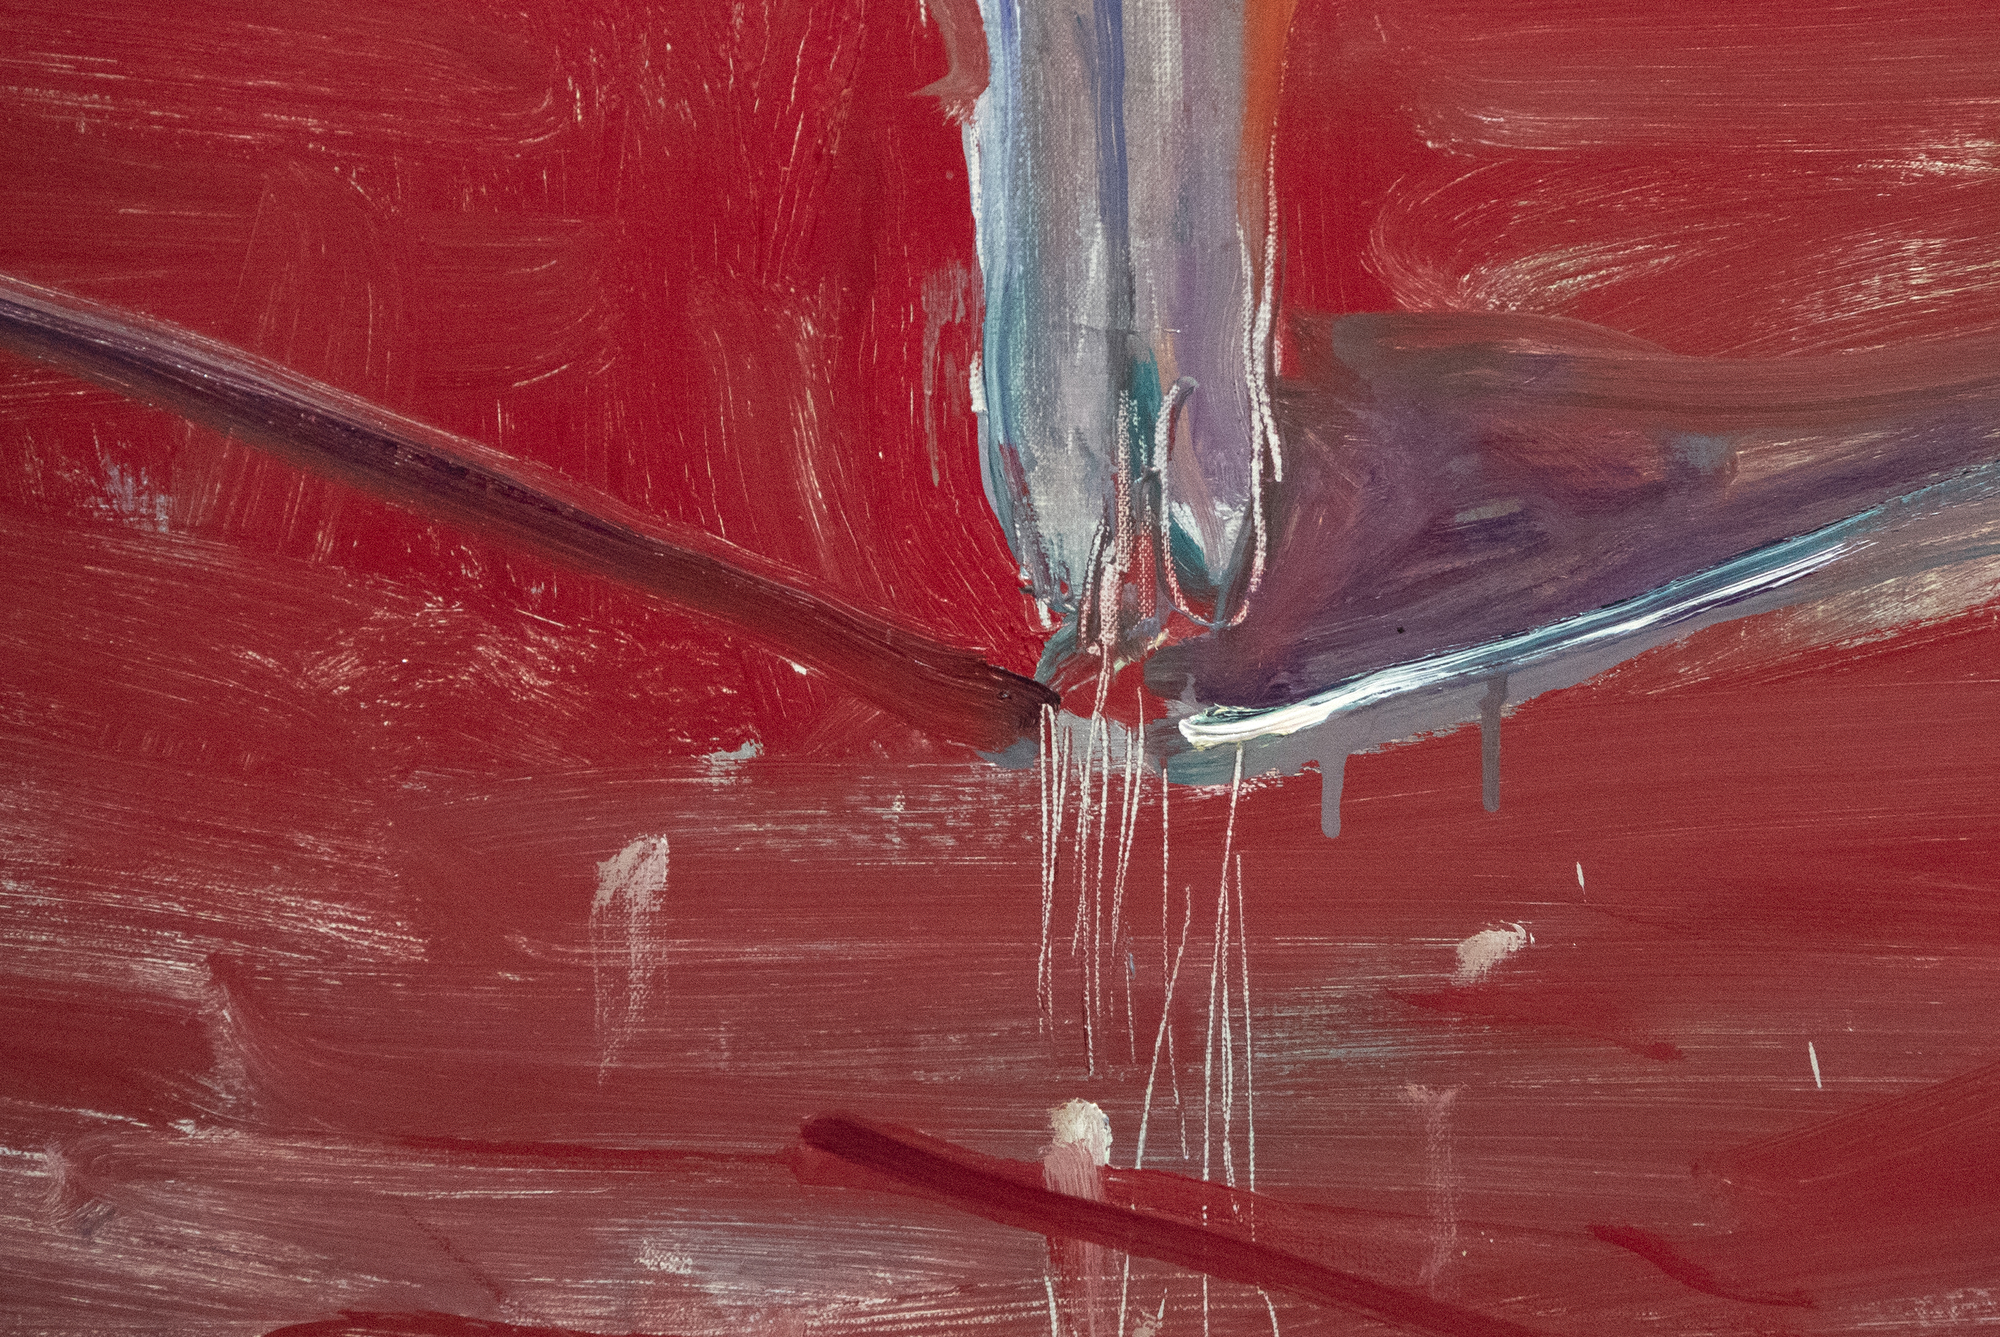 Nathan Olivera est souvent associé aux peintres figuratifs de la Bay Area en Californie, mais en réalité, son travail révèle son intérêt pour Willem de Kooning, Alberto Giacometti et Francis Bacon. Ces influences sont des caractéristiques marquantes de Nude Stepping from the Carpet. Peint alors qu&#039;Olivera avait une trentaine d&#039;années, c&#039;est exactement le genre de tableau qui a établi sa première réputation pour ses représentations obsédantes de figures isolées peintes dans un style improvisé. Le travail ultérieur d&#039;Oliveira reflète le commentaire influent de de Kooning concernant le défi de peindre des souvenirs visuels et de créer des figures ayant une présence ténue, mais la forte ligne d&#039;horizon qui sous-tend ce paysage confère à la figure une présence plus corporelle qu&#039;à l&#039;accoutumée.